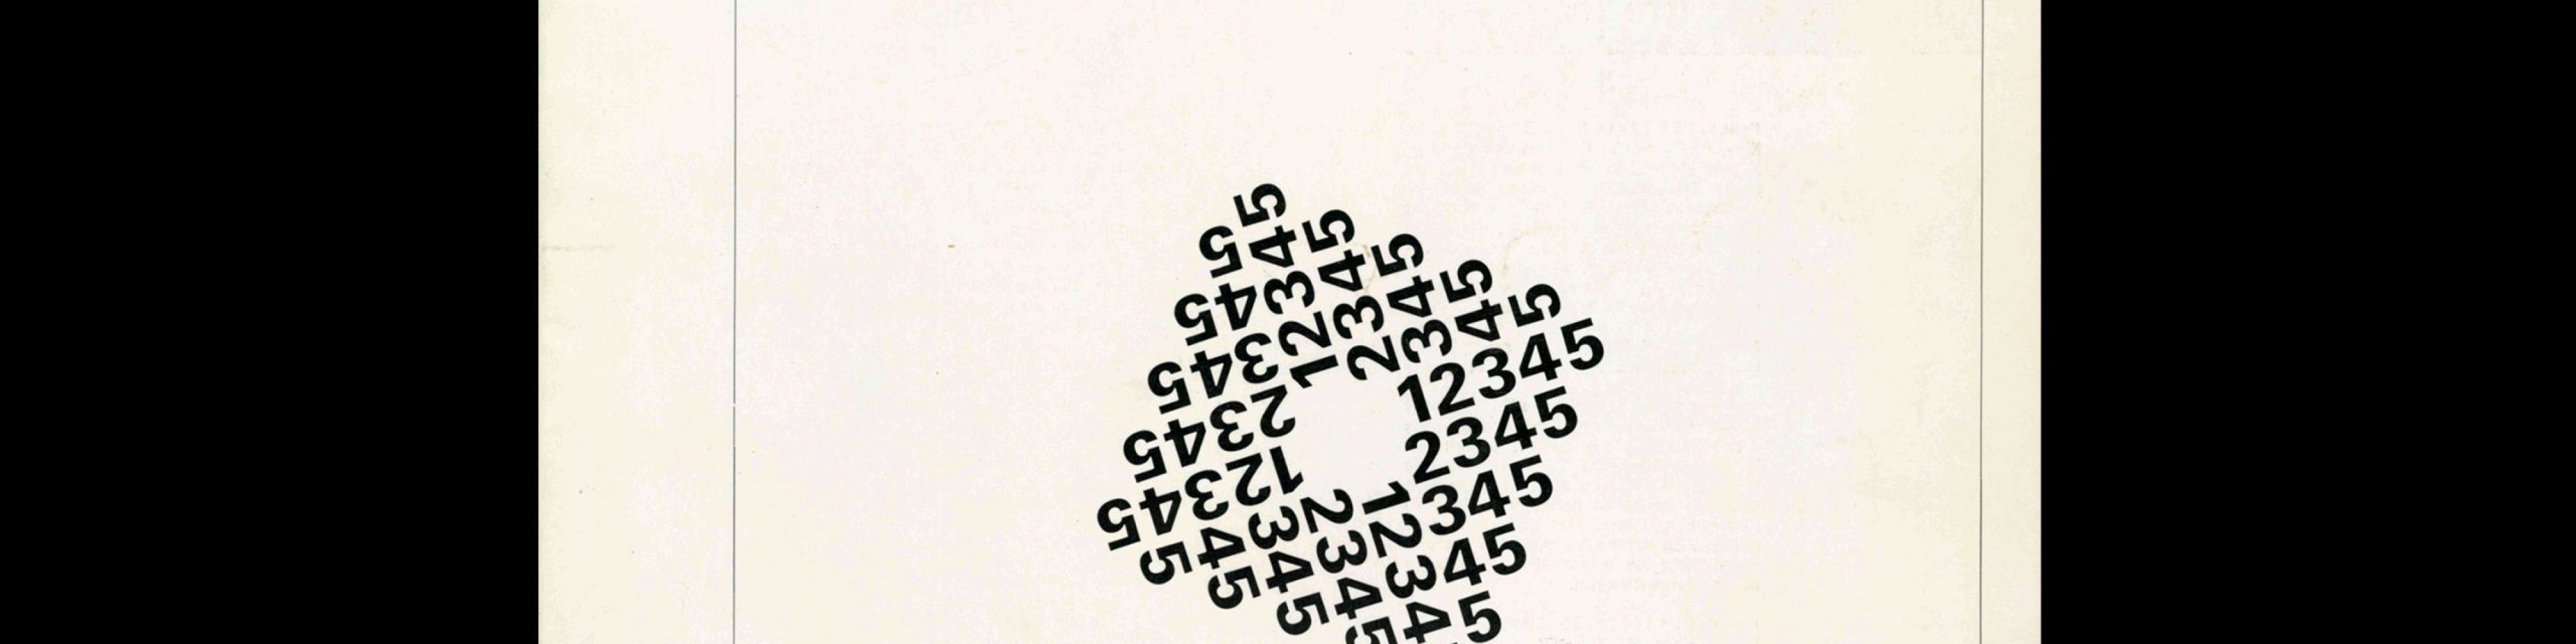 Typografische Monatsblätter, 5, 1969. Cover design by Theophil Stirnemann